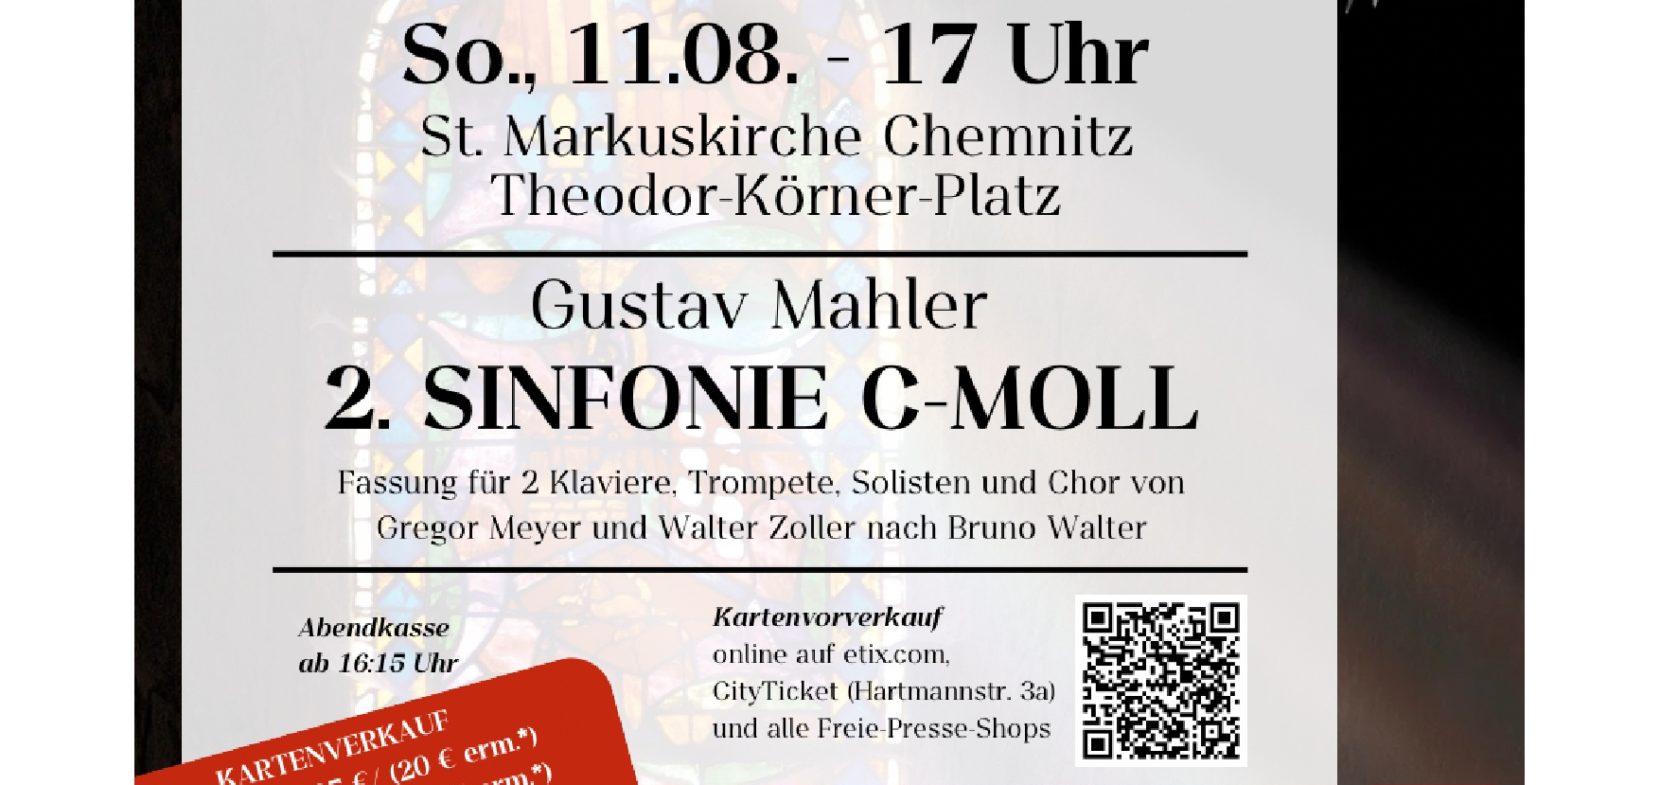 Konzert in St. Markus- Gustav Mahler 2. SINFONIE C- MOLL